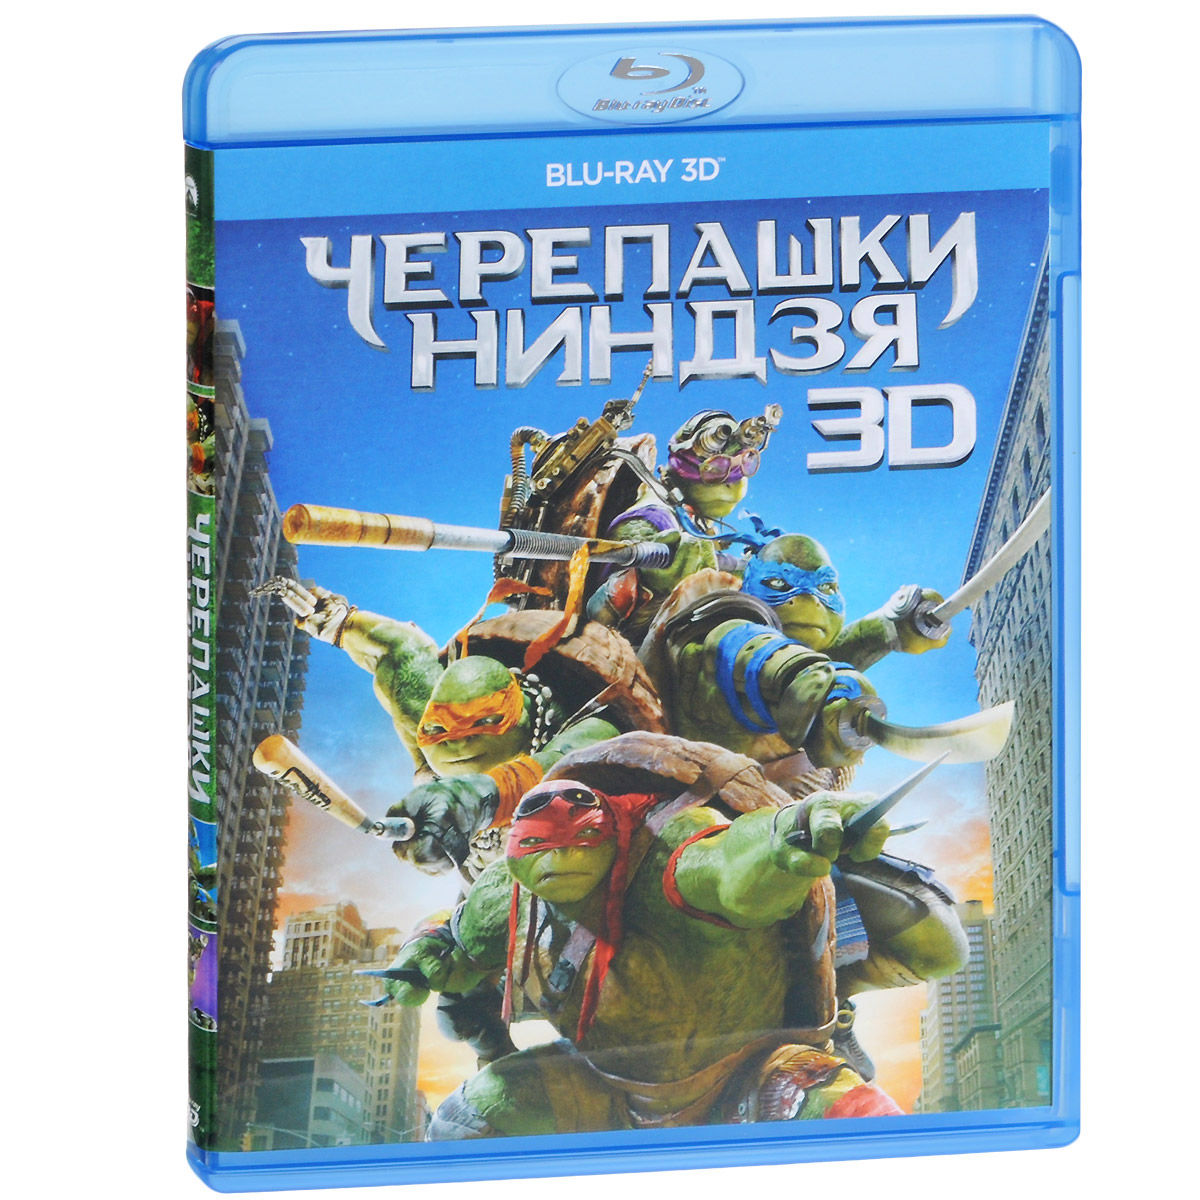 Черепашки-ниндзя 3D (Blu-ray)